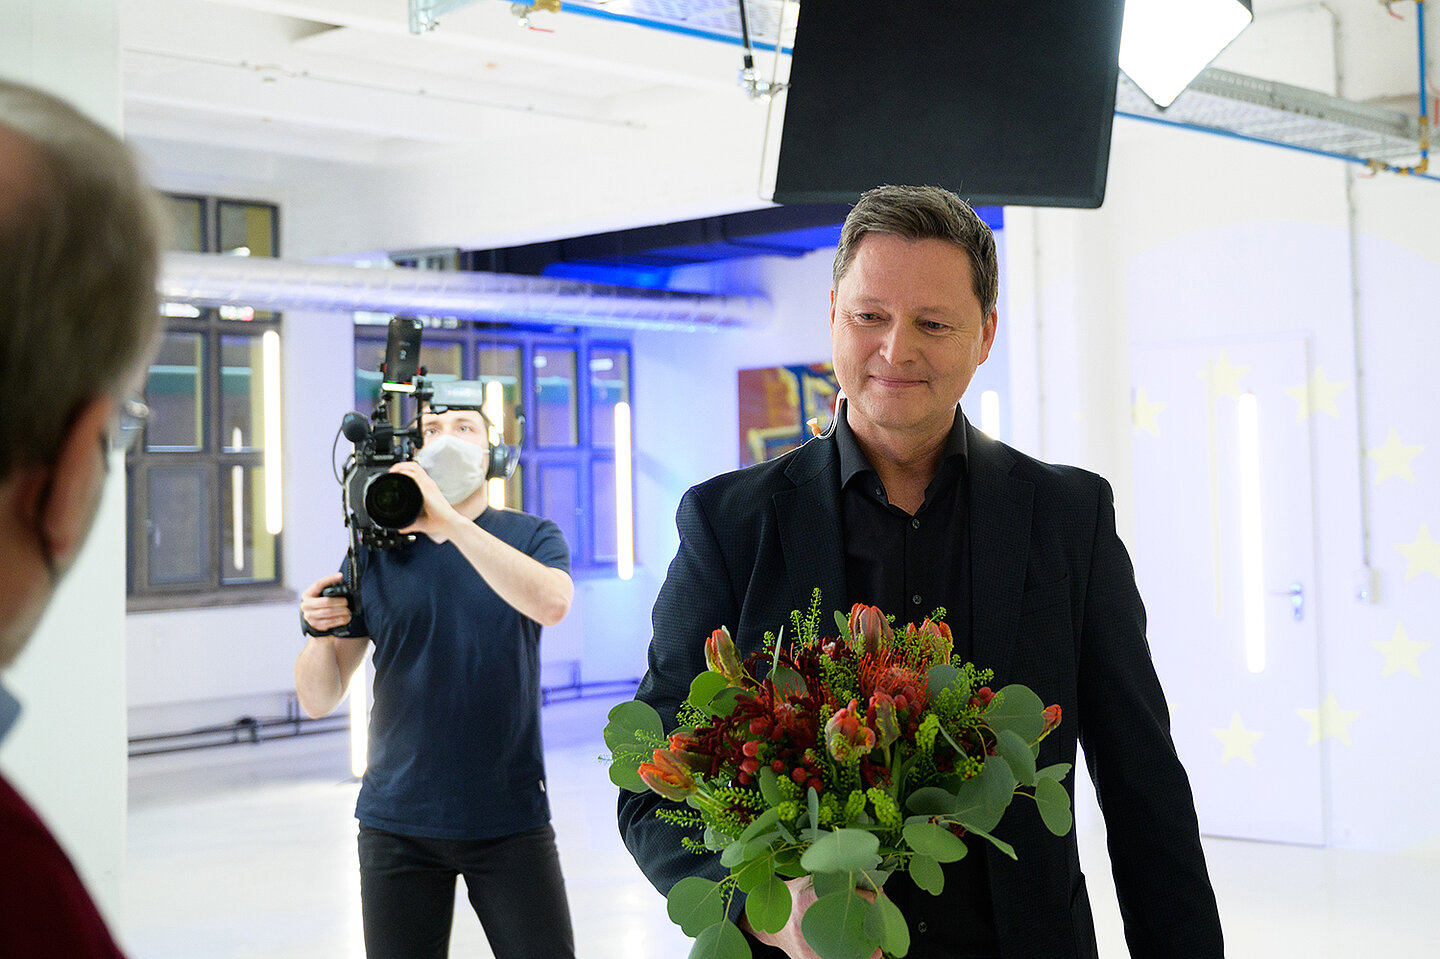 Zum Geburtstag werden Andreas Fritsch durch Volker Kurz ein Strauß Blumen überreicht. Eine Kamera filmt das geschehen.